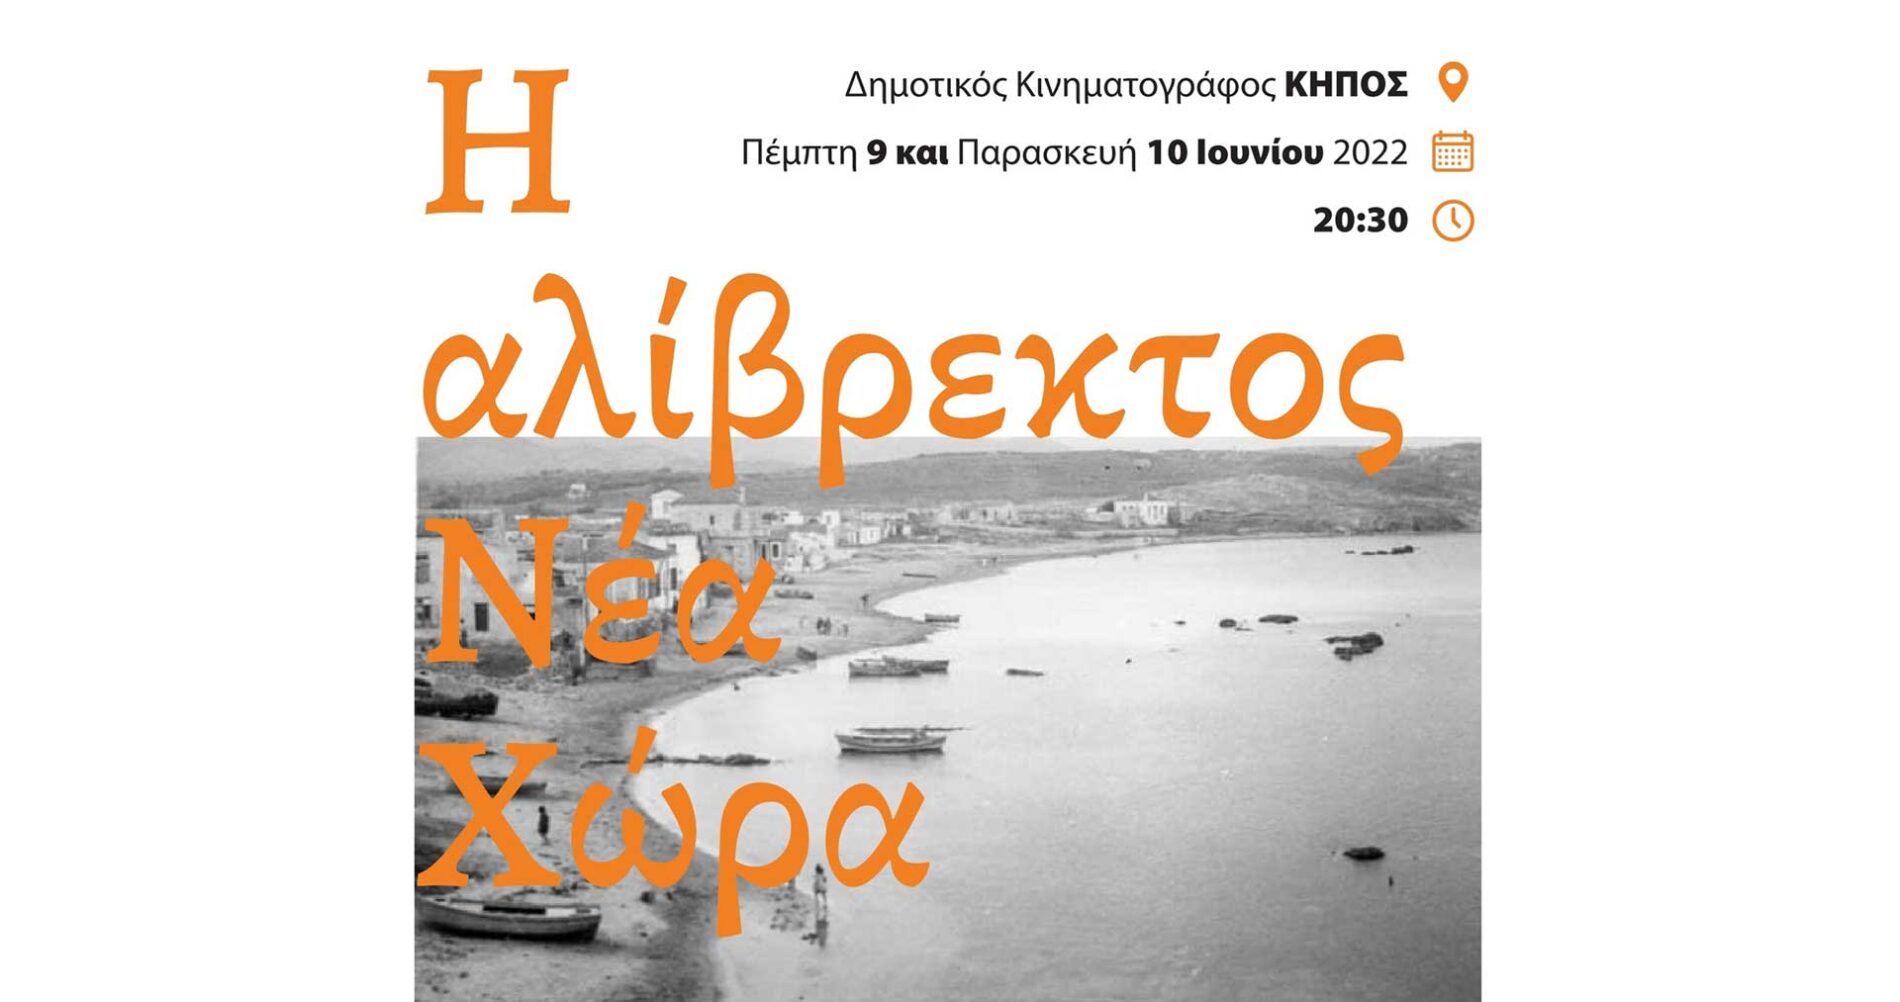 Πρόσκληση: Προβολή Ντοκιμαντέρ «Η Αλίβρεκτος Νέα Χώρα» του Κώστα Νταντινάκη στον Δημοτικό Κινηματογράφο ΚΗΠΟΣ στις 9 & 10 Ιουνίου 2022